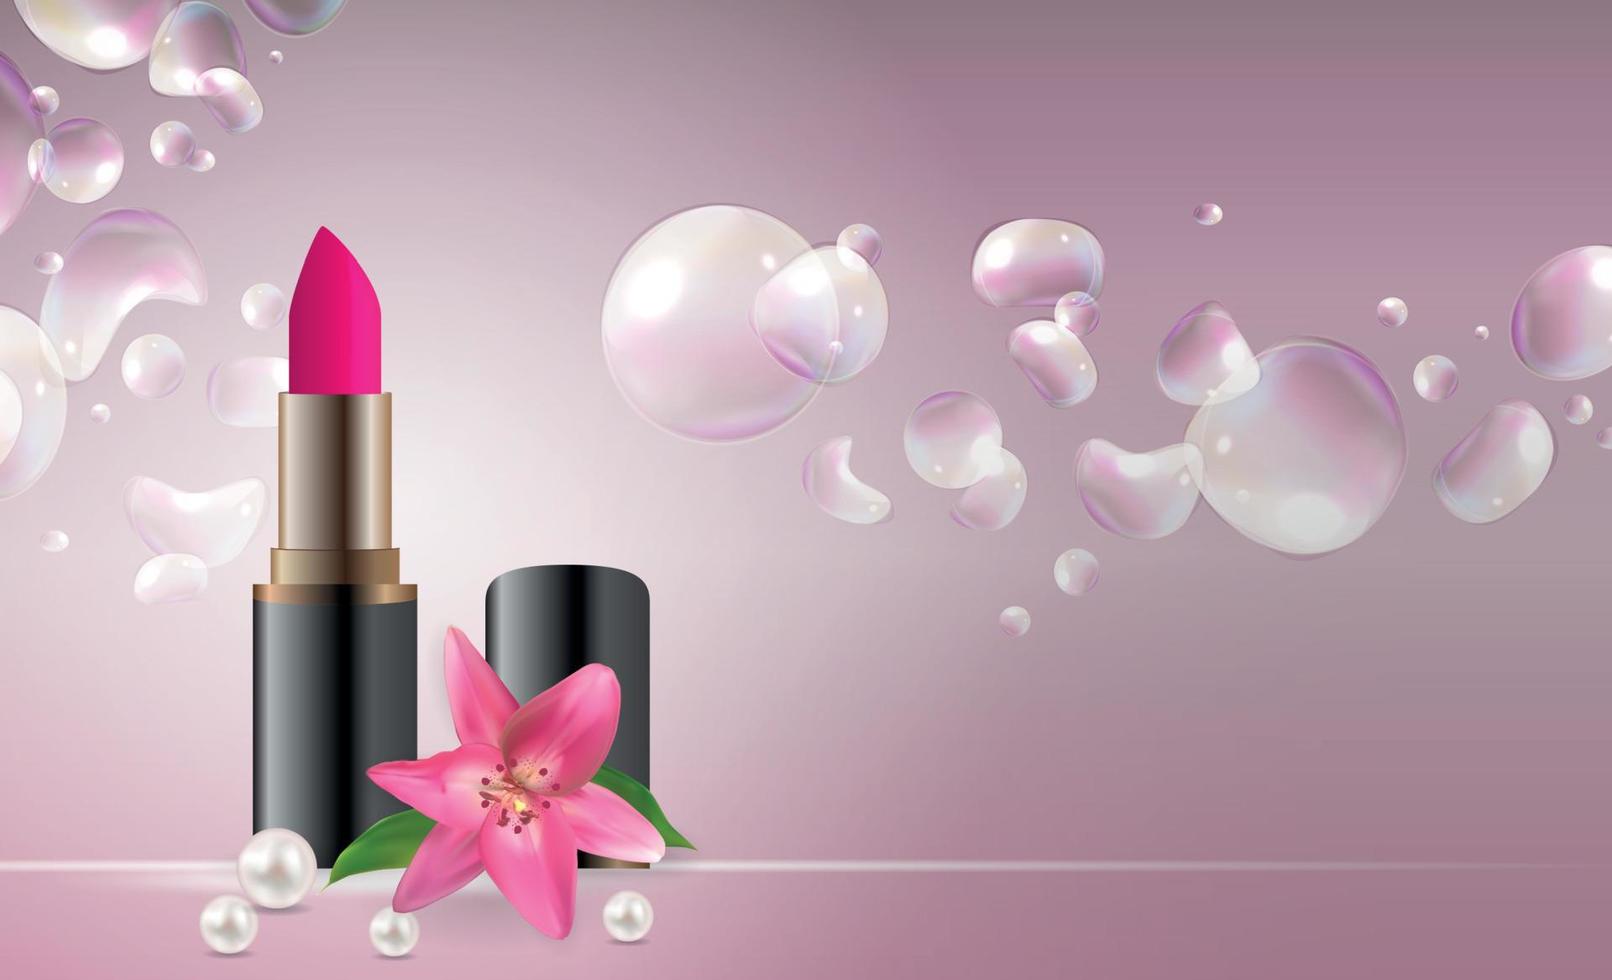 ontwerp cosmetica product lippenstift sjabloon voor advertenties of tijdschriftachtergrond. 3D-realistische vectorillustratie vector